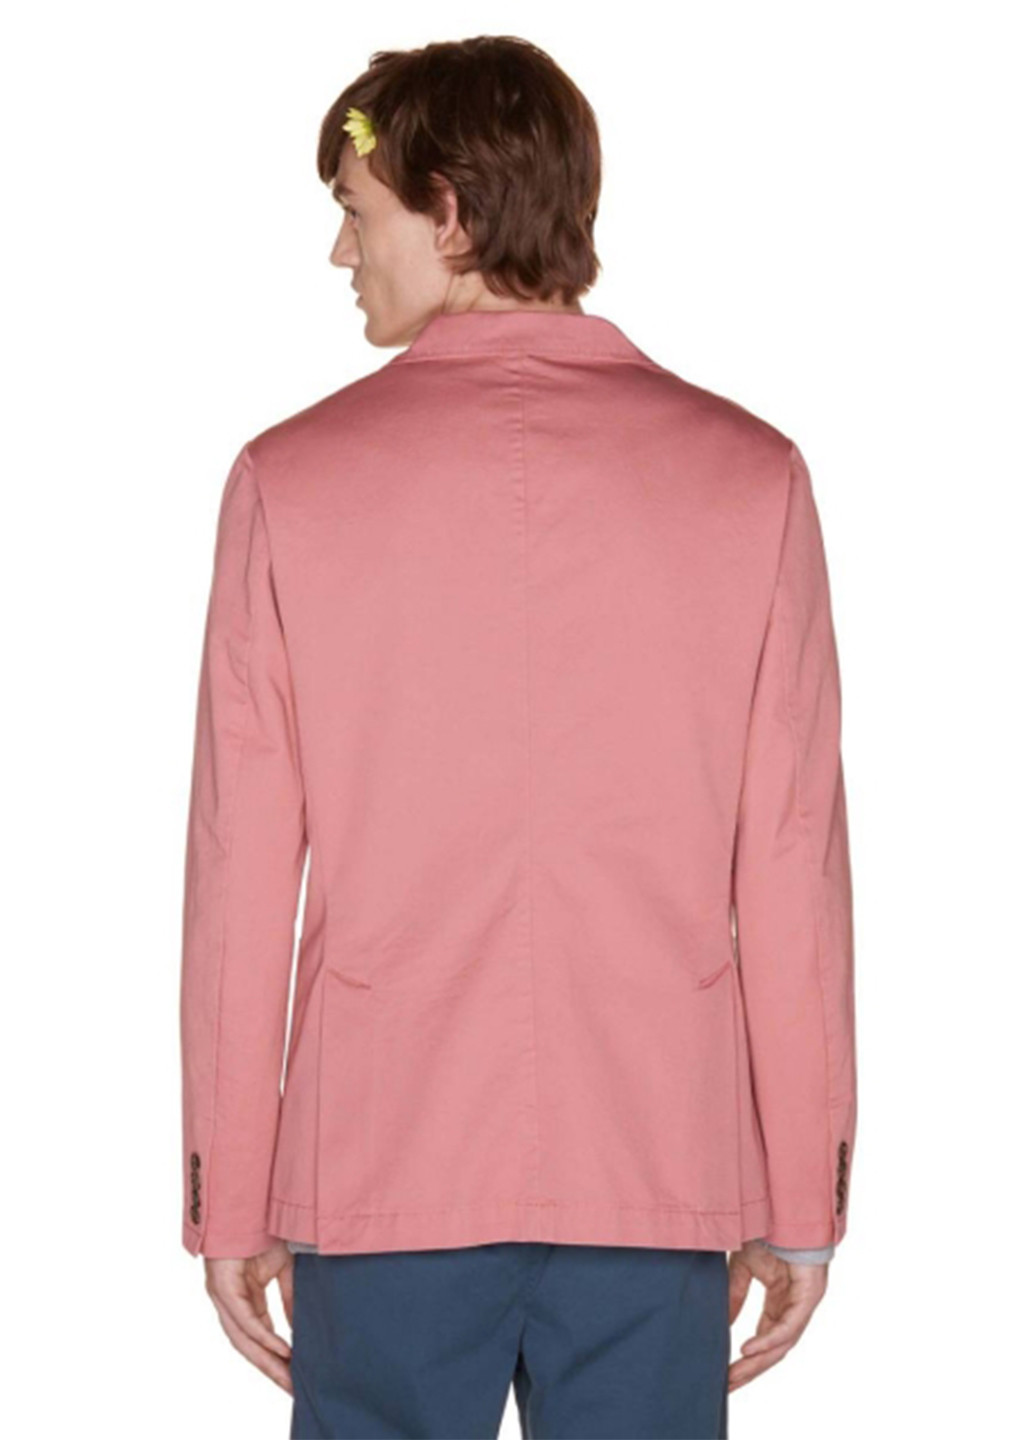 Піджак United Colors of Benetton однотонний рожевий кежуал льон